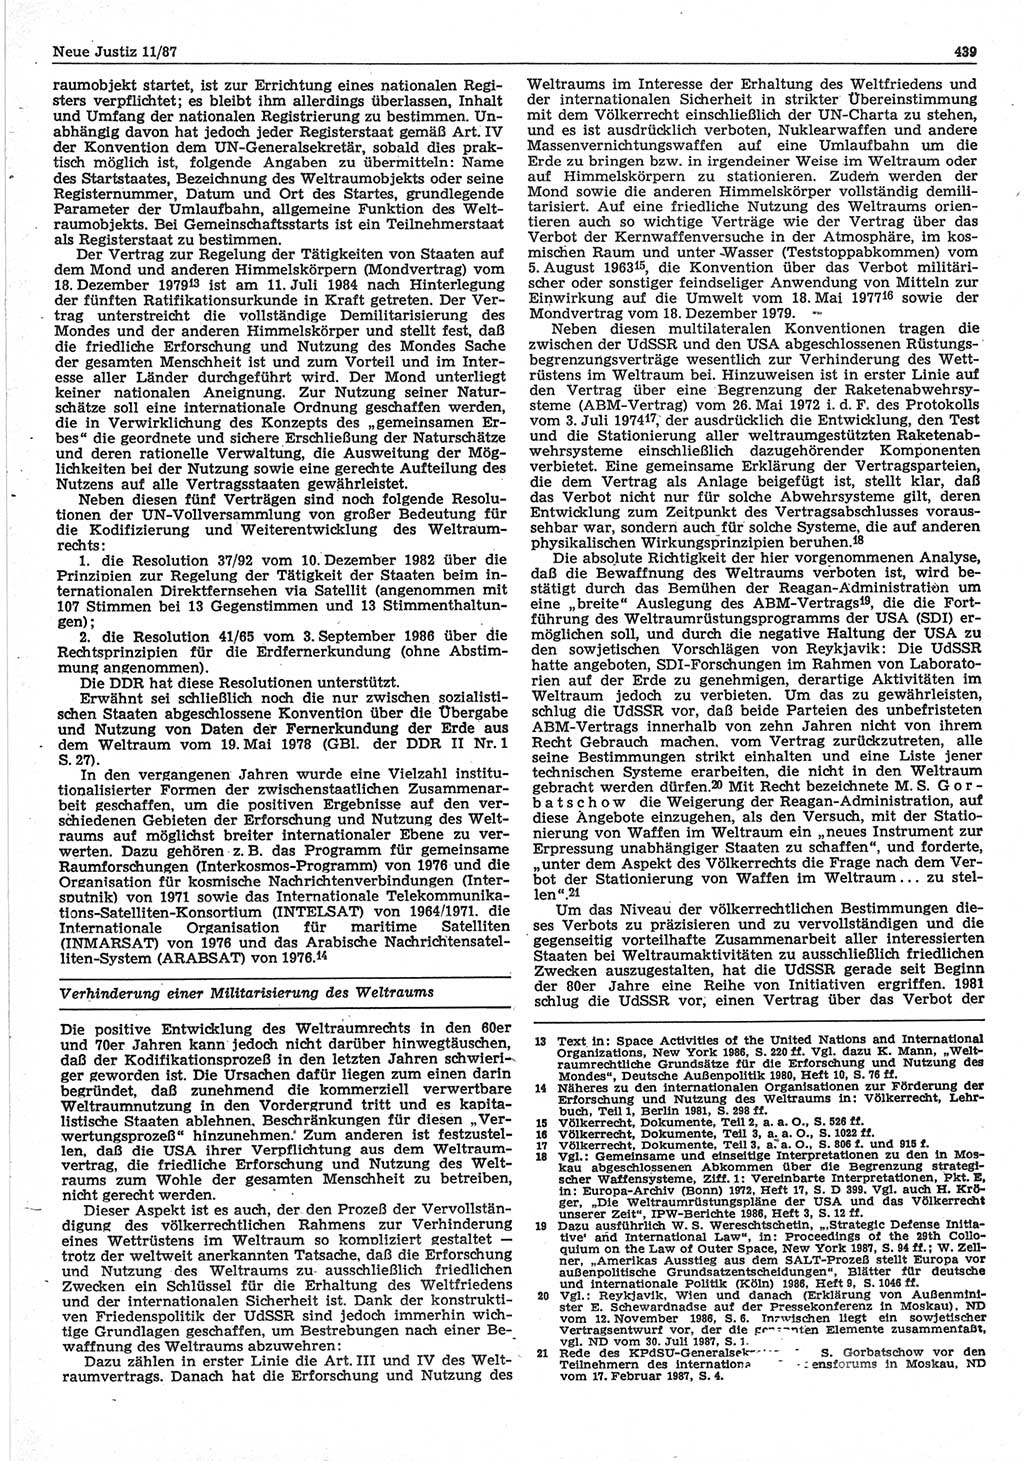 Neue Justiz (NJ), Zeitschrift für sozialistisches Recht und Gesetzlichkeit [Deutsche Demokratische Republik (DDR)], 41. Jahrgang 1987, Seite 439 (NJ DDR 1987, S. 439)